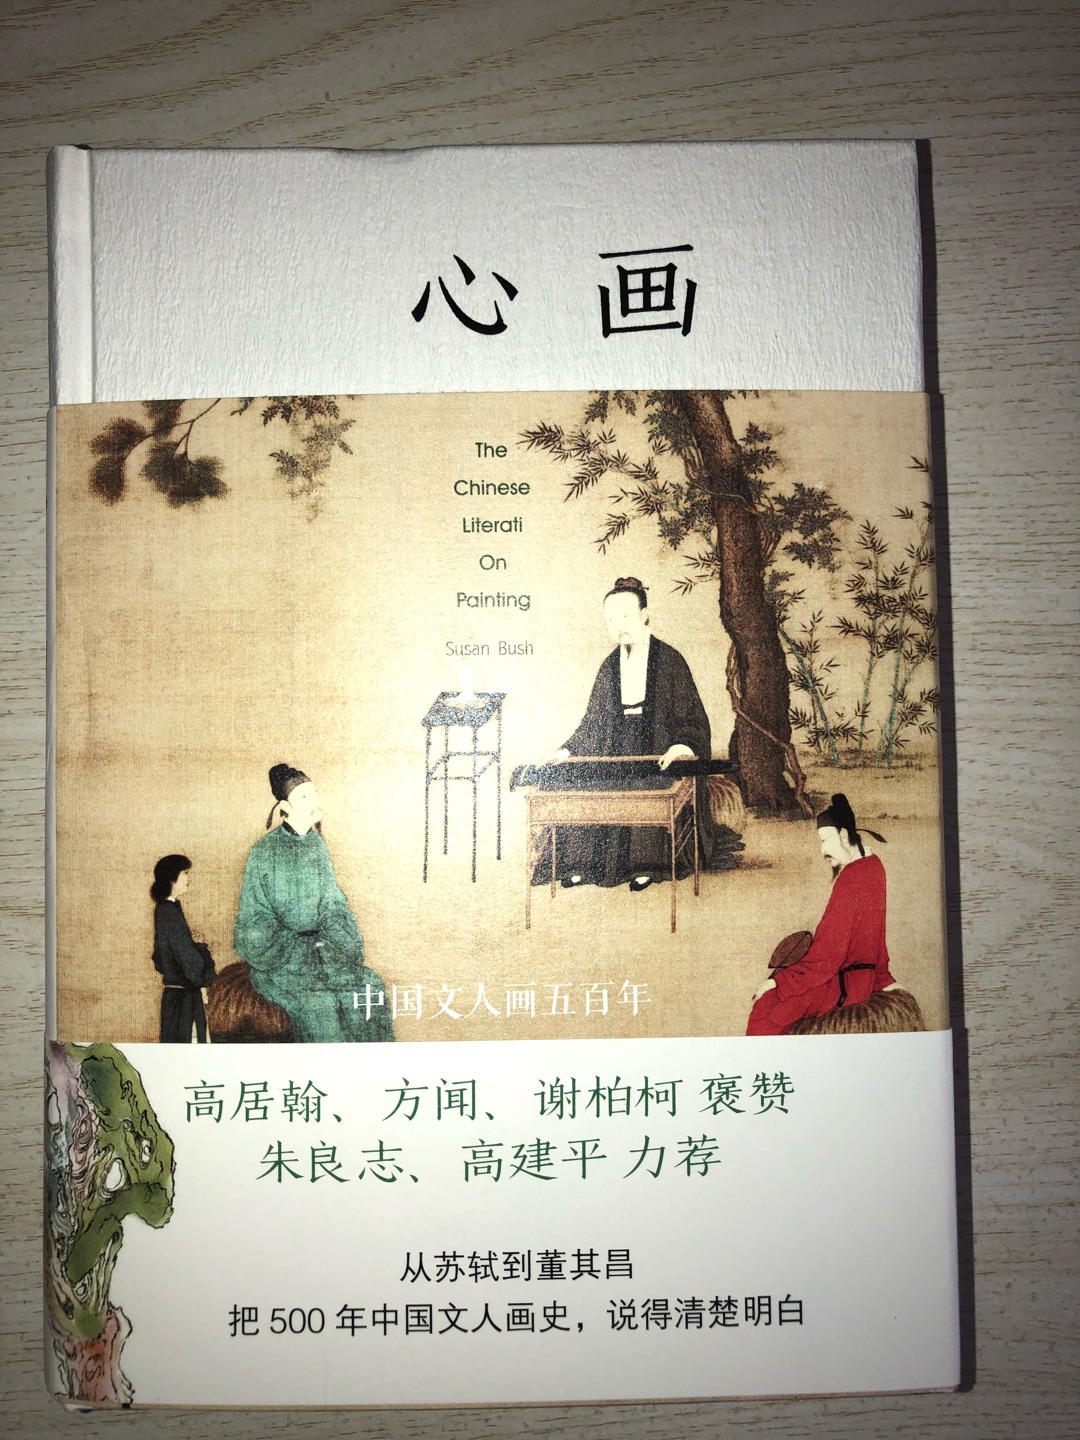 《心画》这本书主要是介绍中国文人画的，是卜寿珊女士在哈佛读博士学位时的毕业论文，时间跨度由北宋至明。所谓“观士人画，如阅天下马，取其意气所到。”，深深在中国文化上留下烙印。大家之言，值得一读。